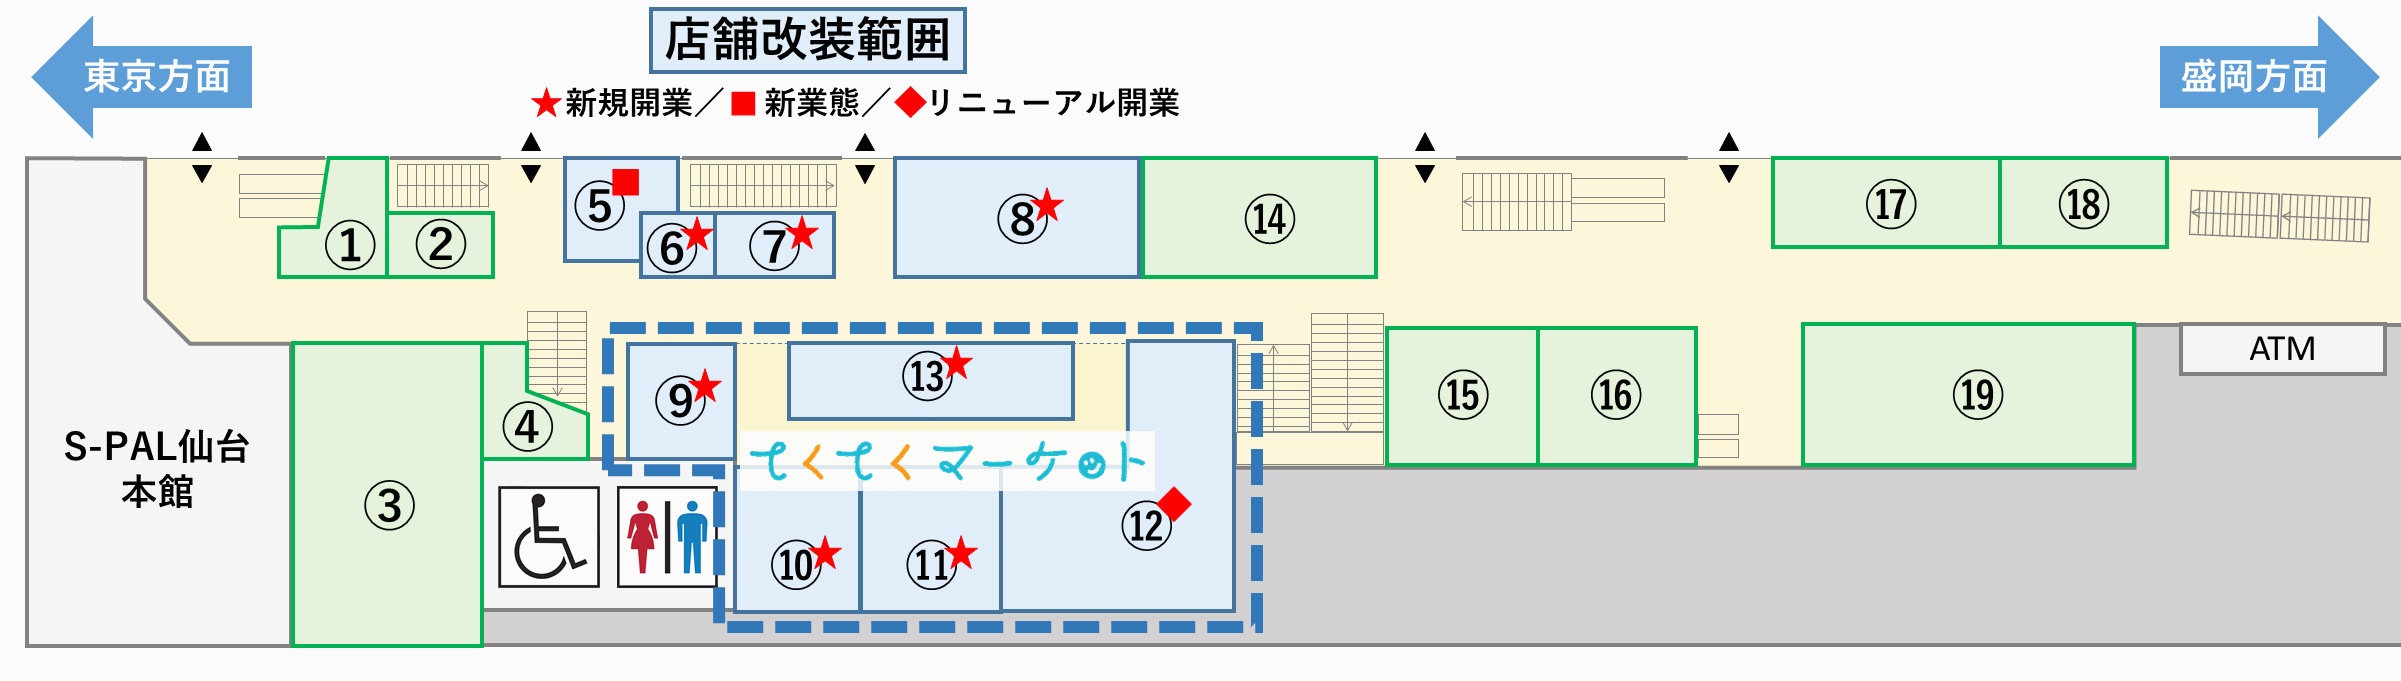 仙台駅１階が Tekute せんだい としてリニューアル お買い物を楽しめる てくてくマーケット も誕生 イートマップ仙台